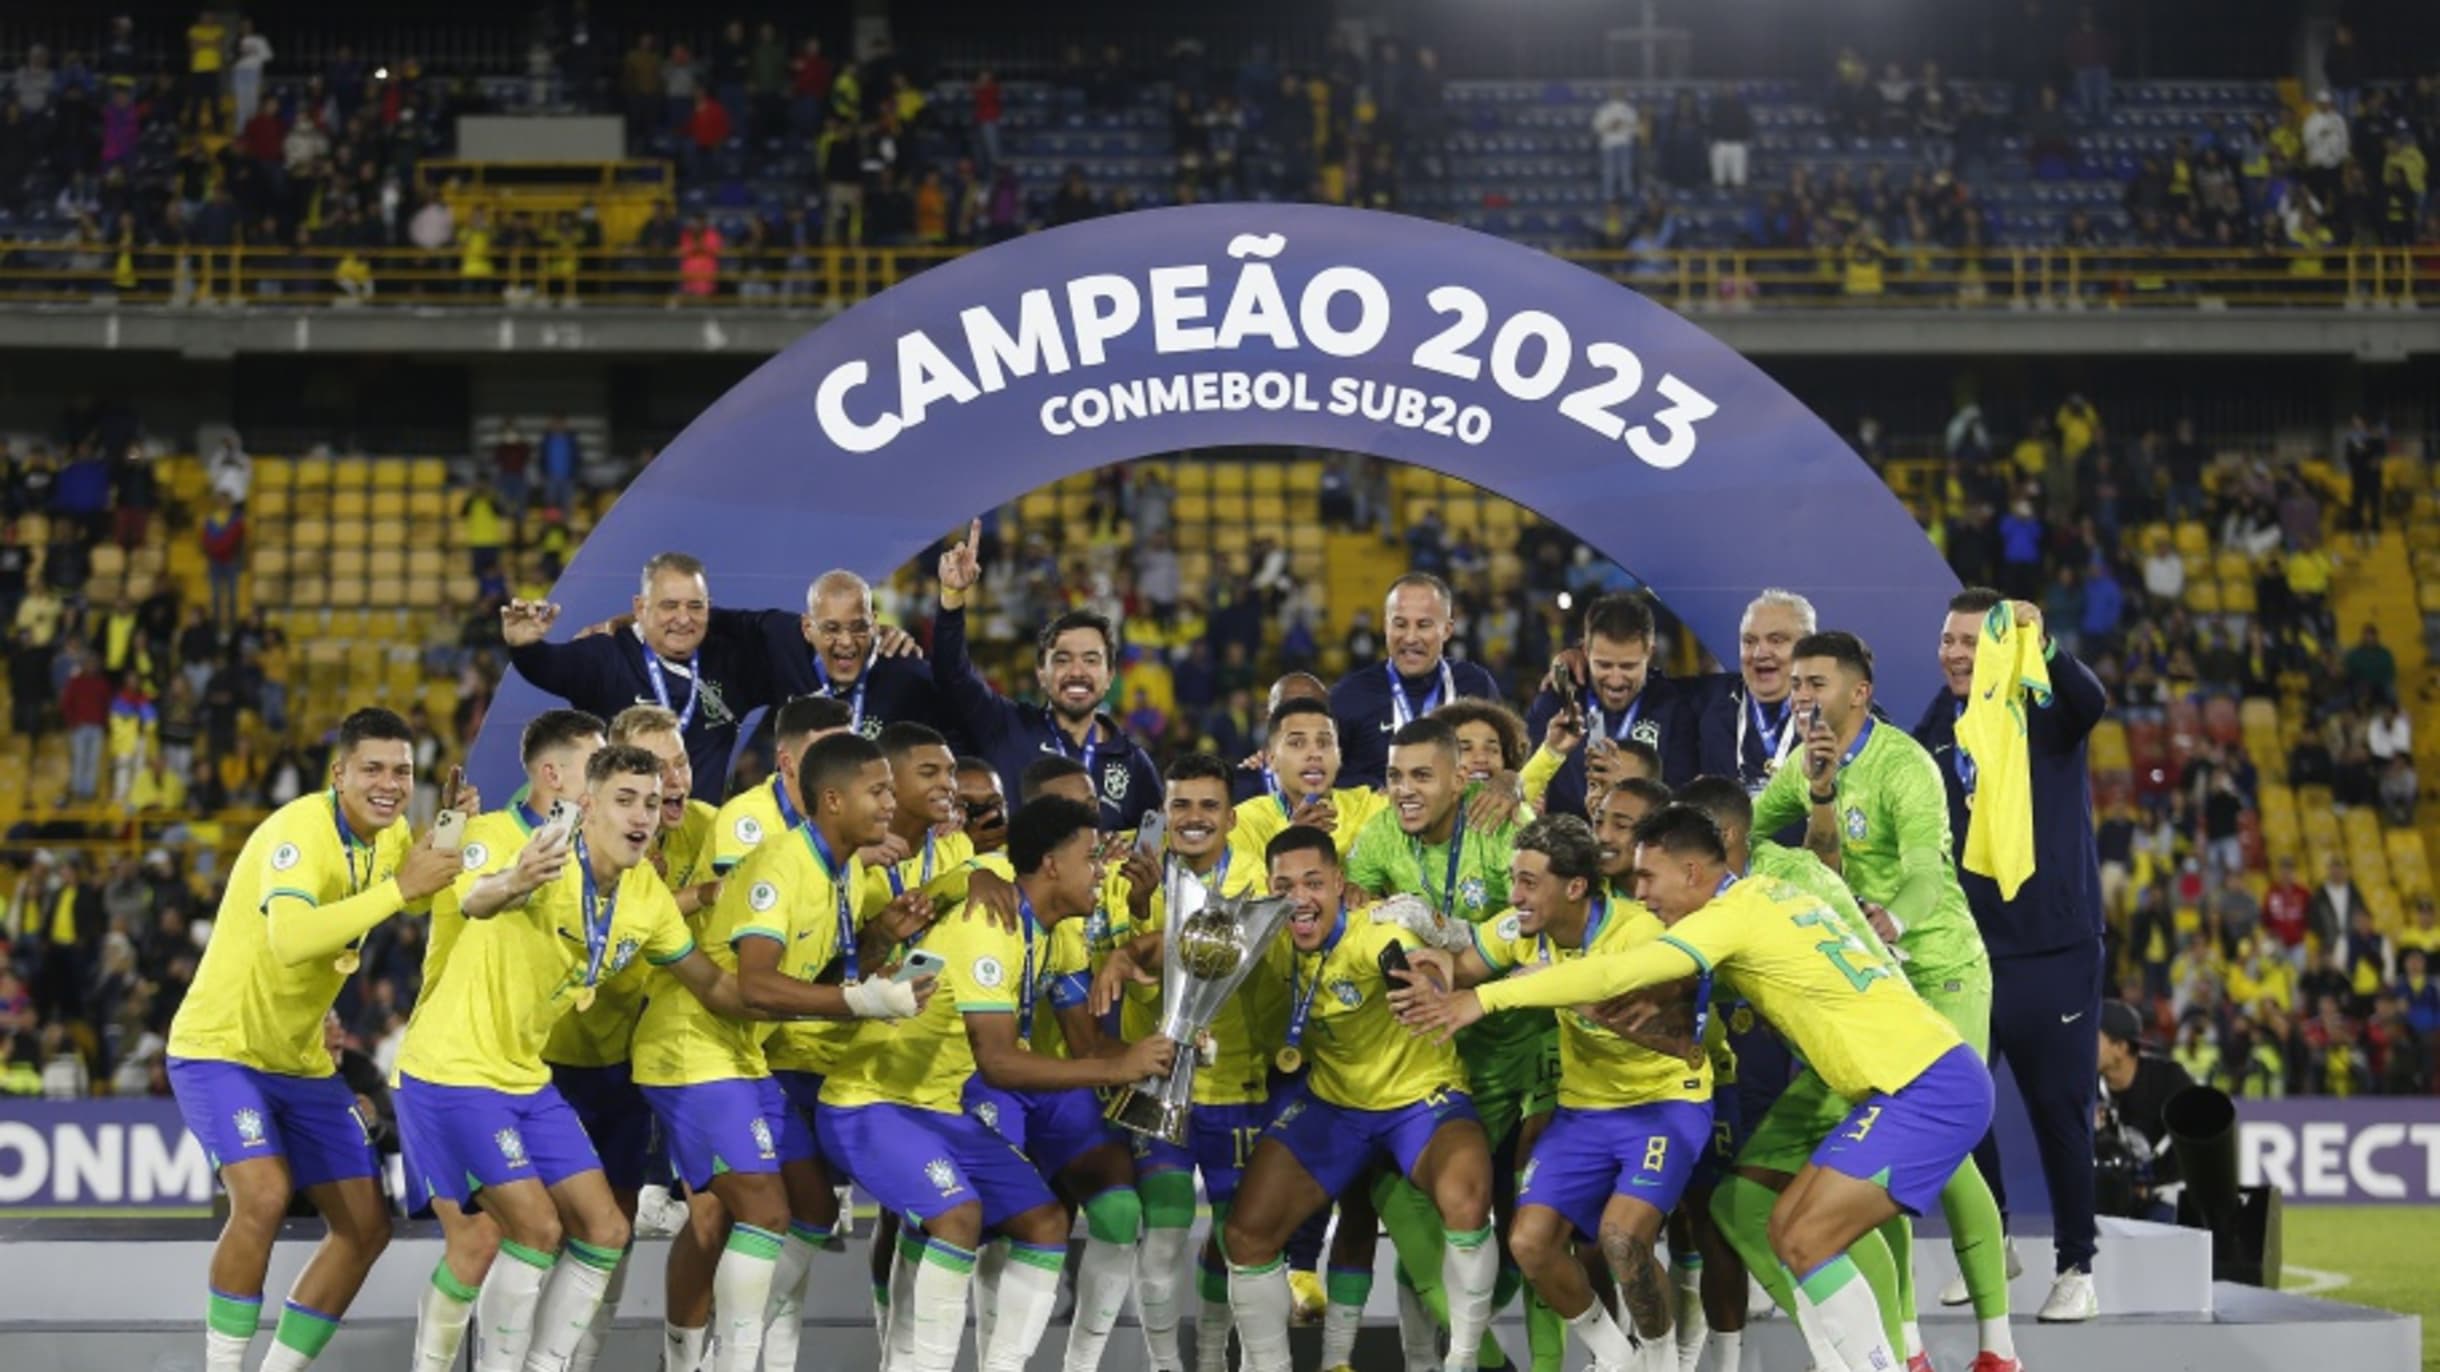 A história do campeonato Mundial Sub 17 - CONMEBOL